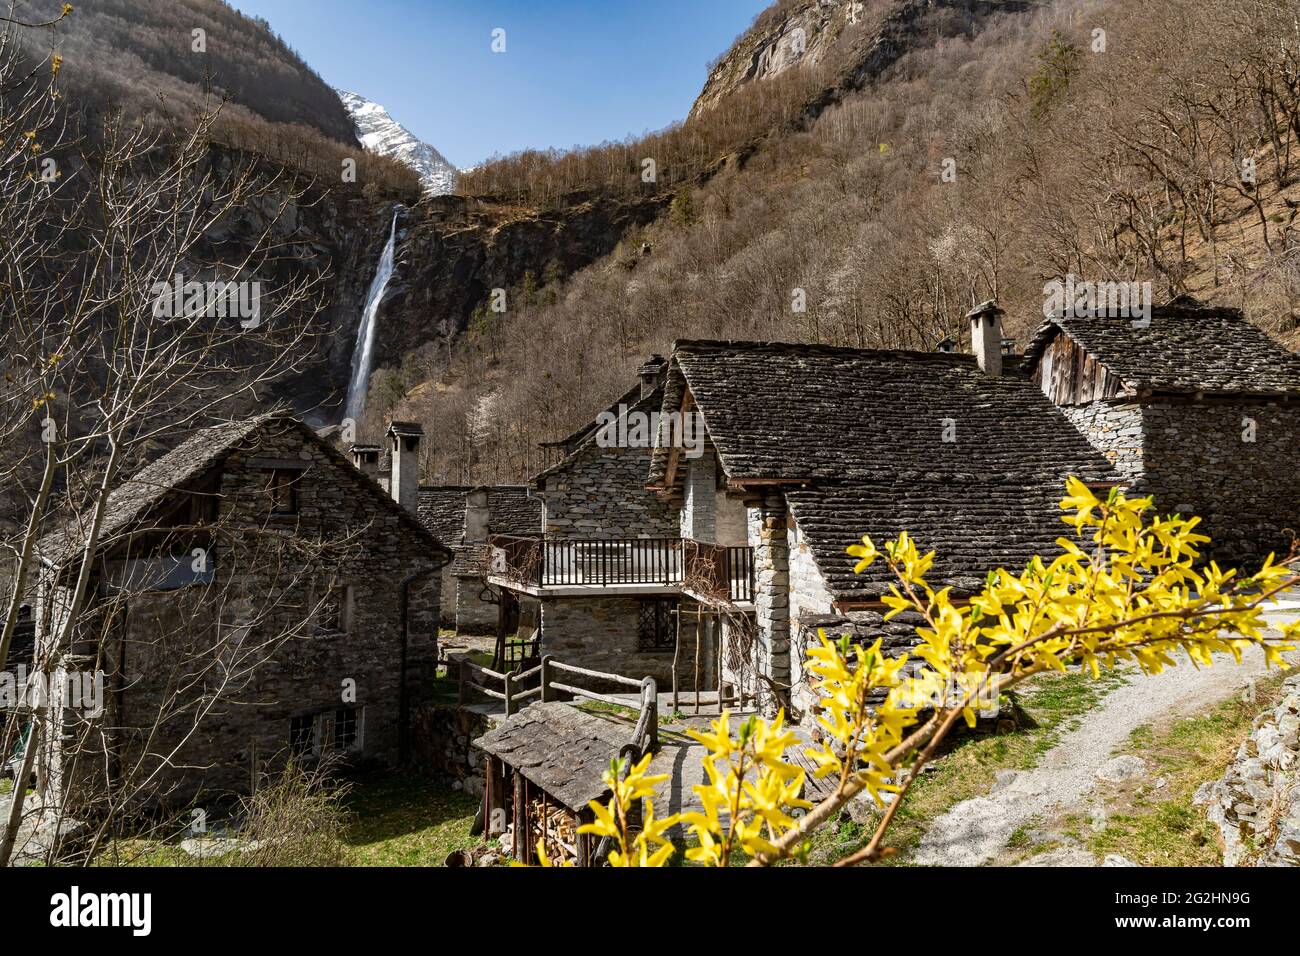 Foroglio è un borgo in pietra ben conservato nell'alta valle di Baona, in Val di Maggia. Le belle case in pietra sono dominate dalla cascata alta 110 m, la cascata di Foroglio. Foto Stock